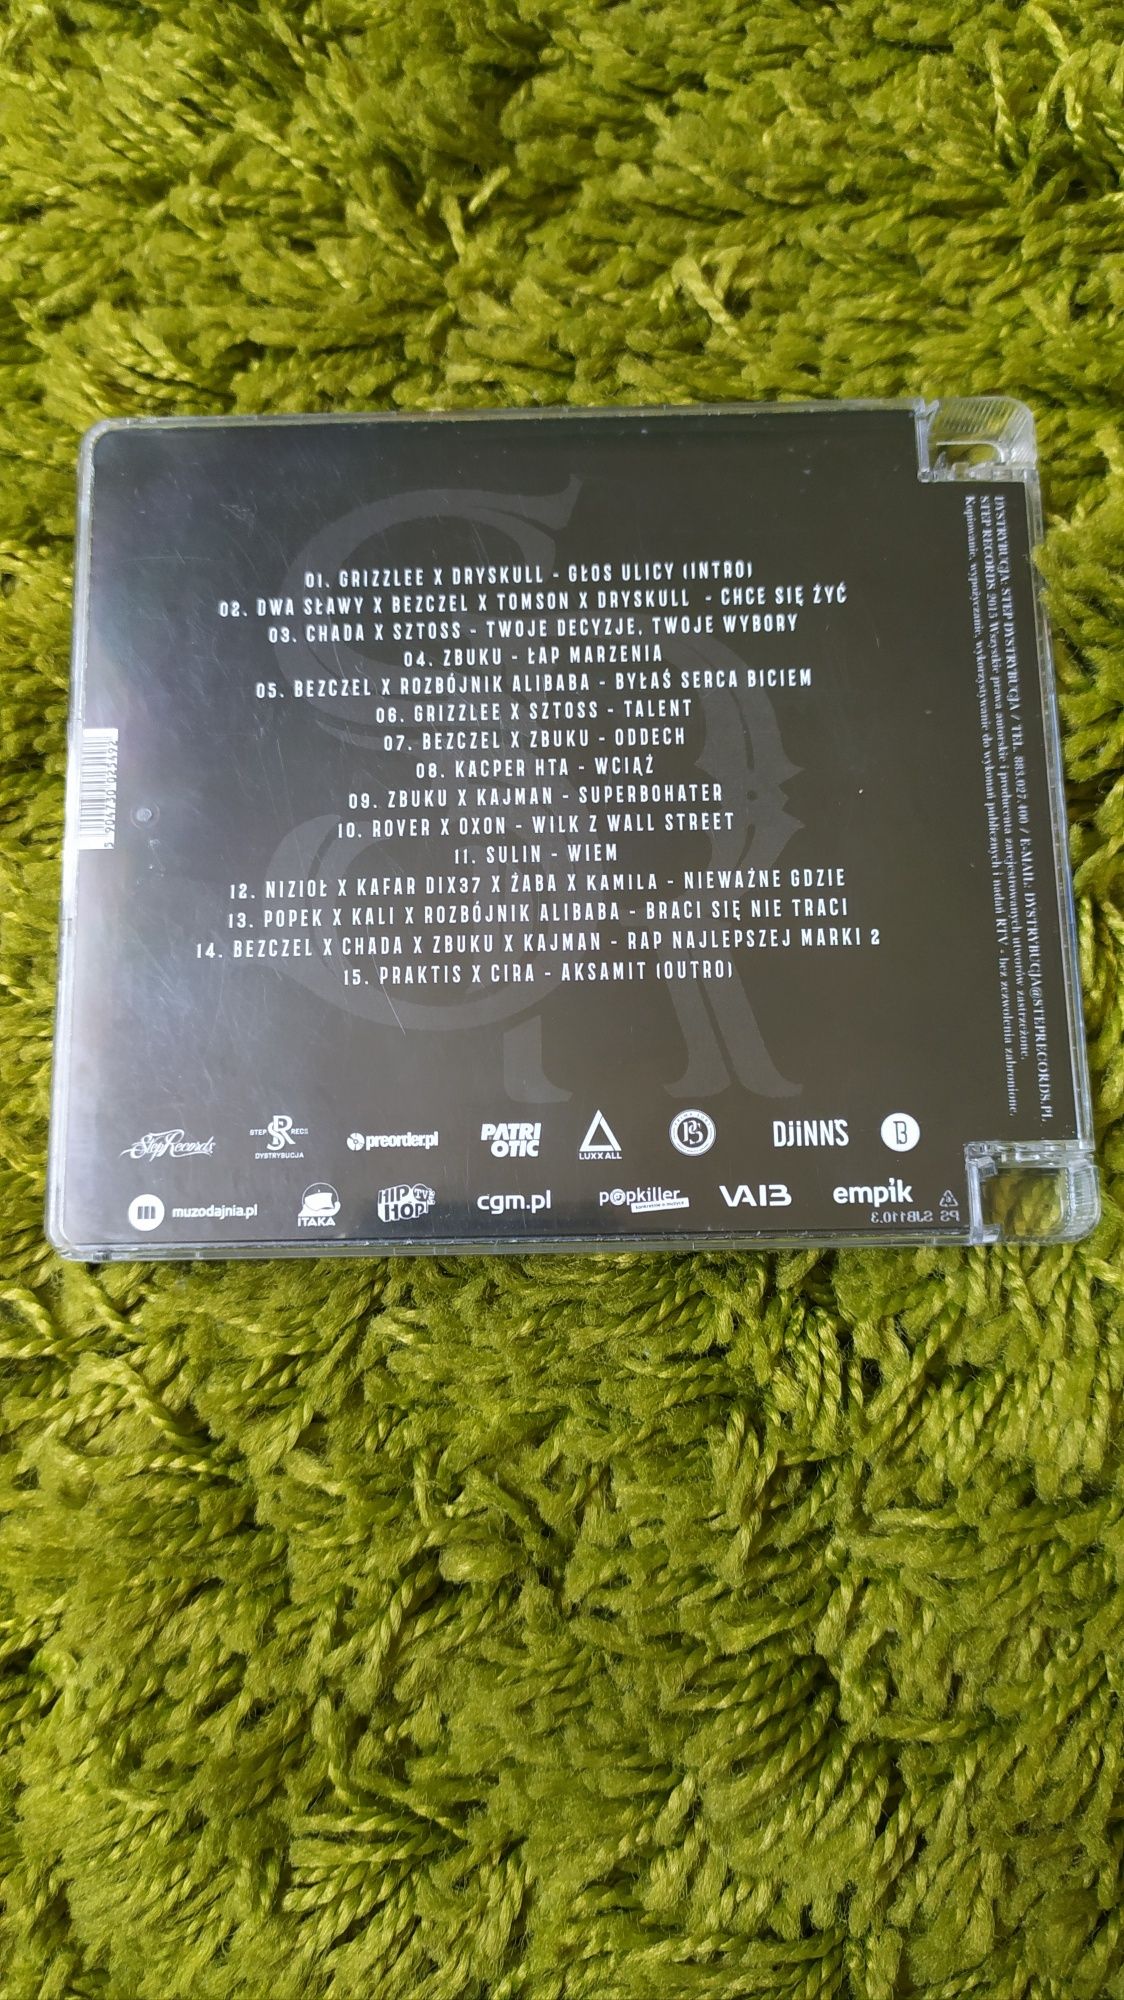 Płyta Rap najlepszej marki vol. 2 CD LTD